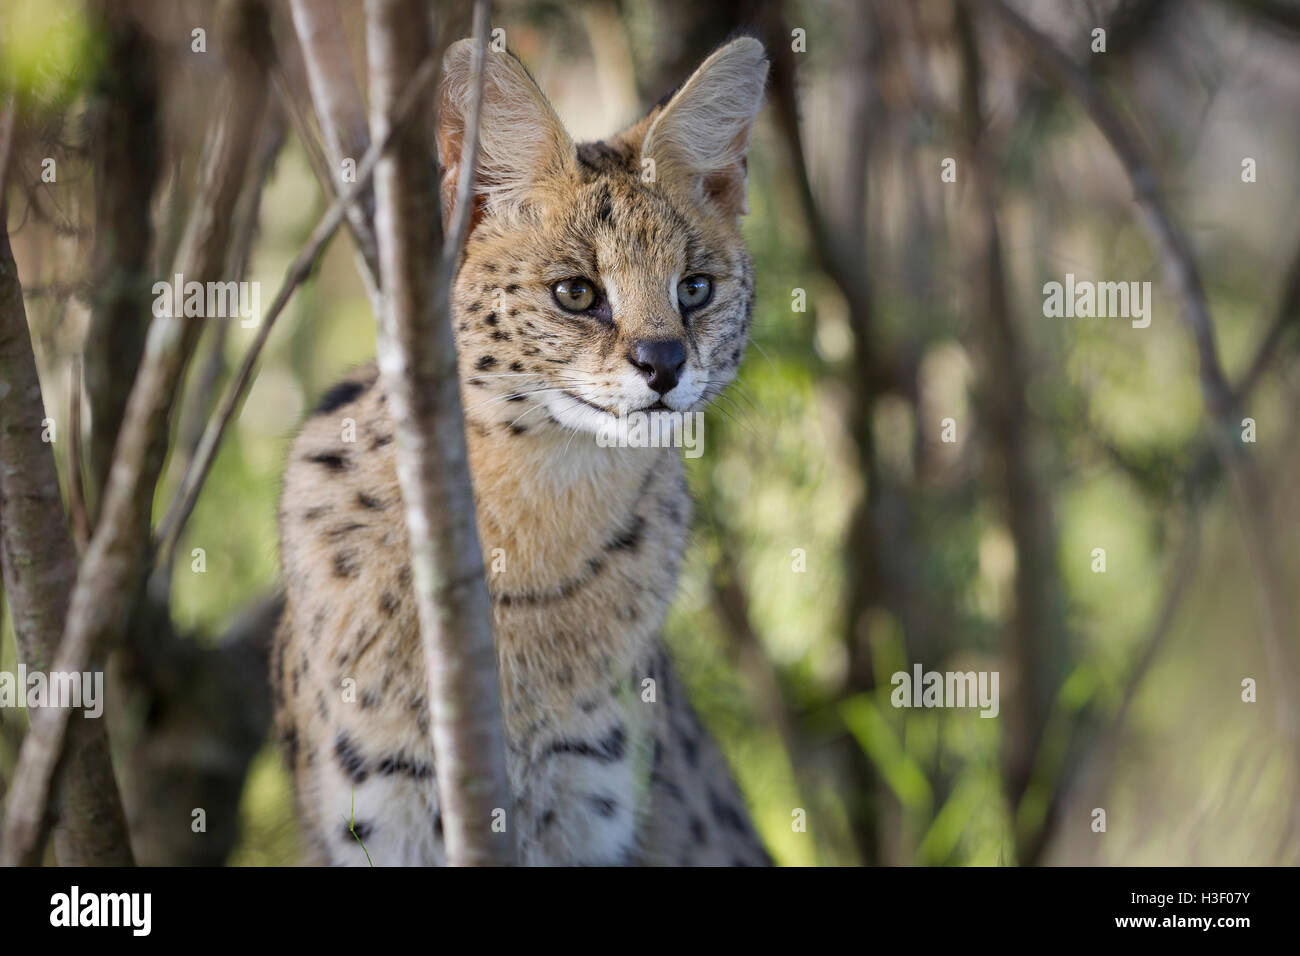 Dies ist ein Porträt von einem Serval, eine gemeinsame Wildkatze im südlichen Afrika. (fotografiert im Naturschutzgebiet). Stockfoto